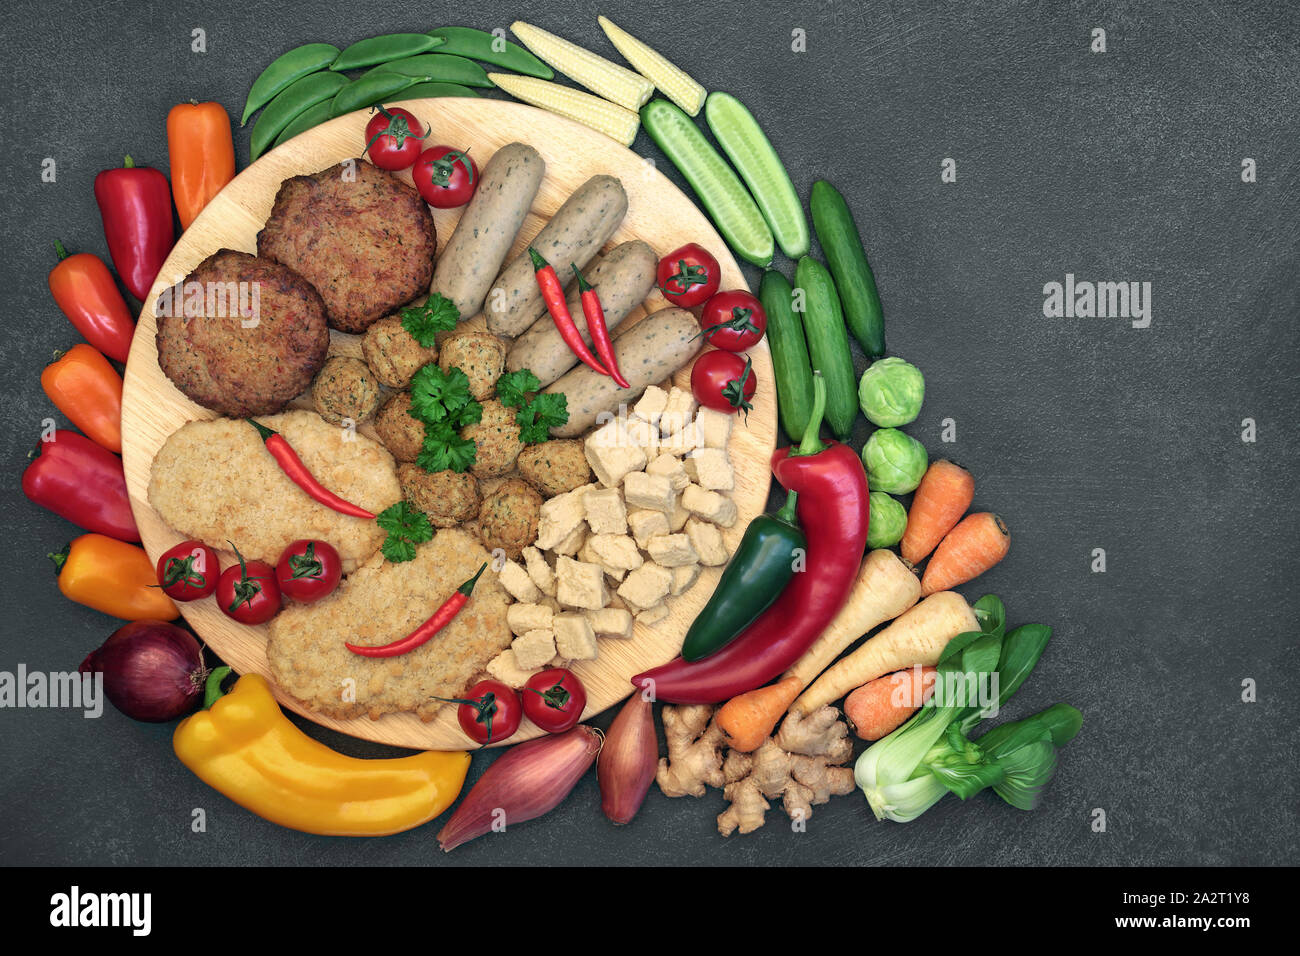 Vegan health food per mangiare etico con quorn sostituto della carne la selezione ad alto contenuto di proteine e frutta & verdura. Foto Stock